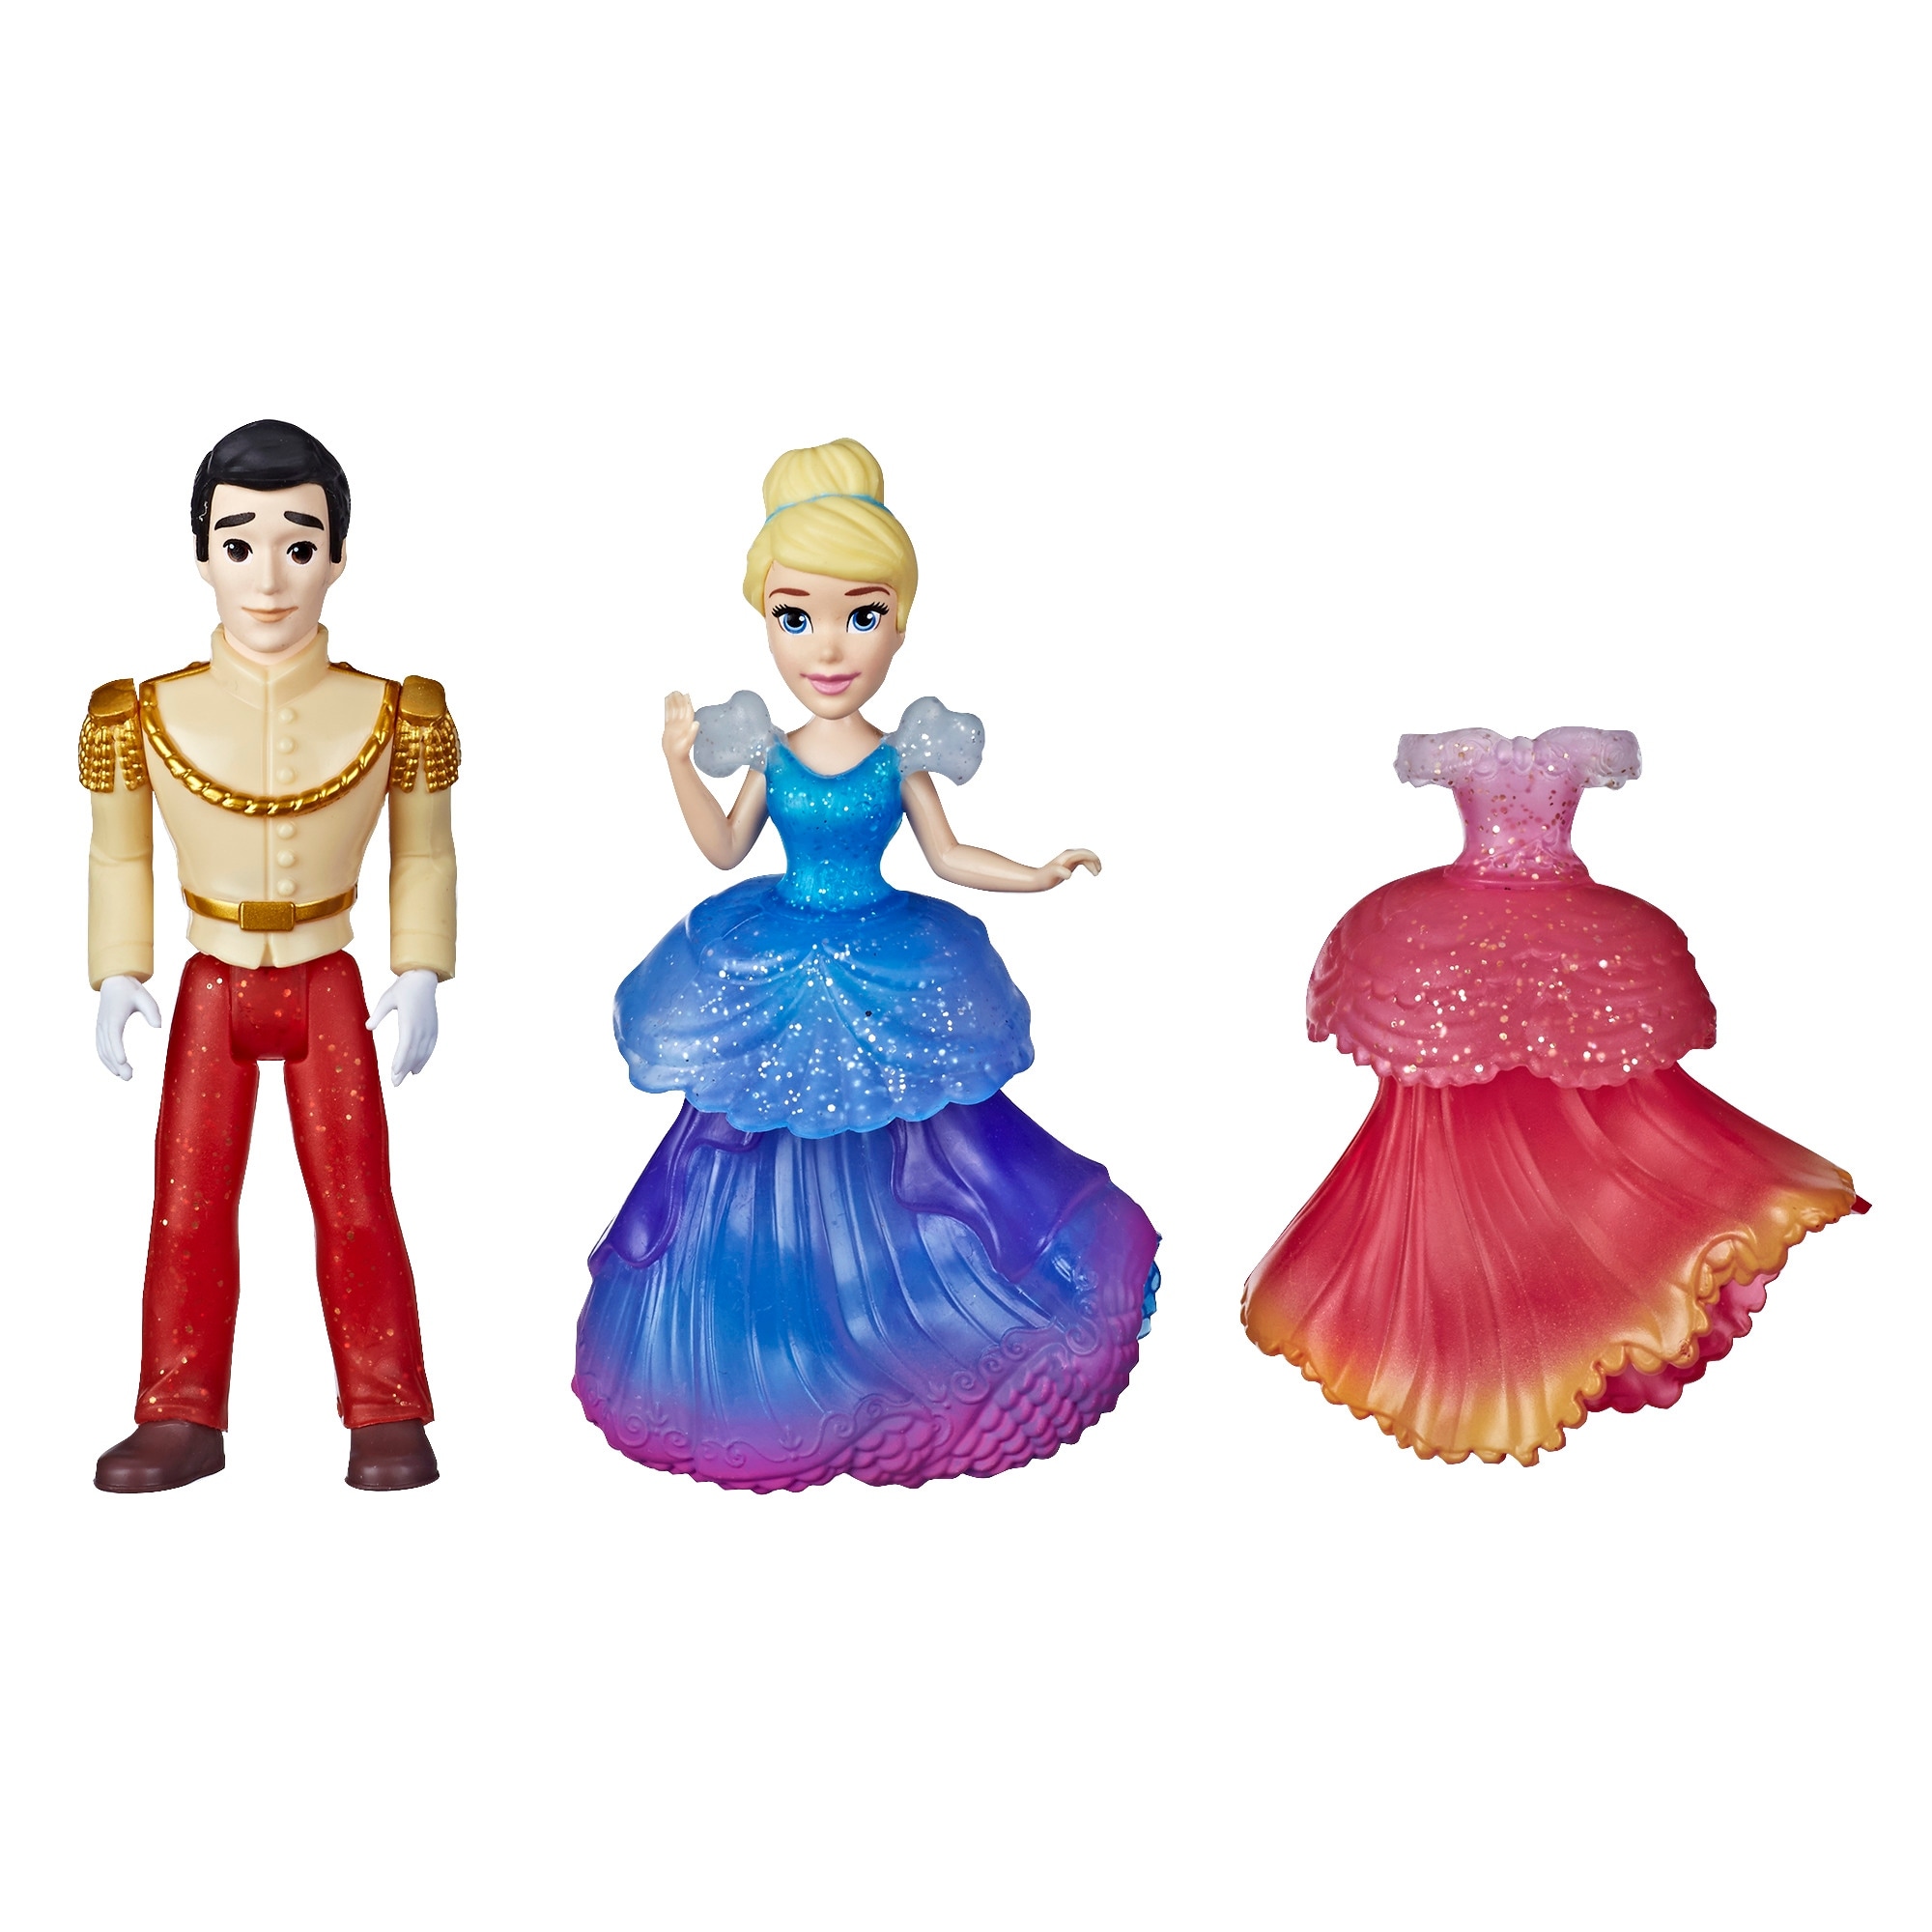 princess toys